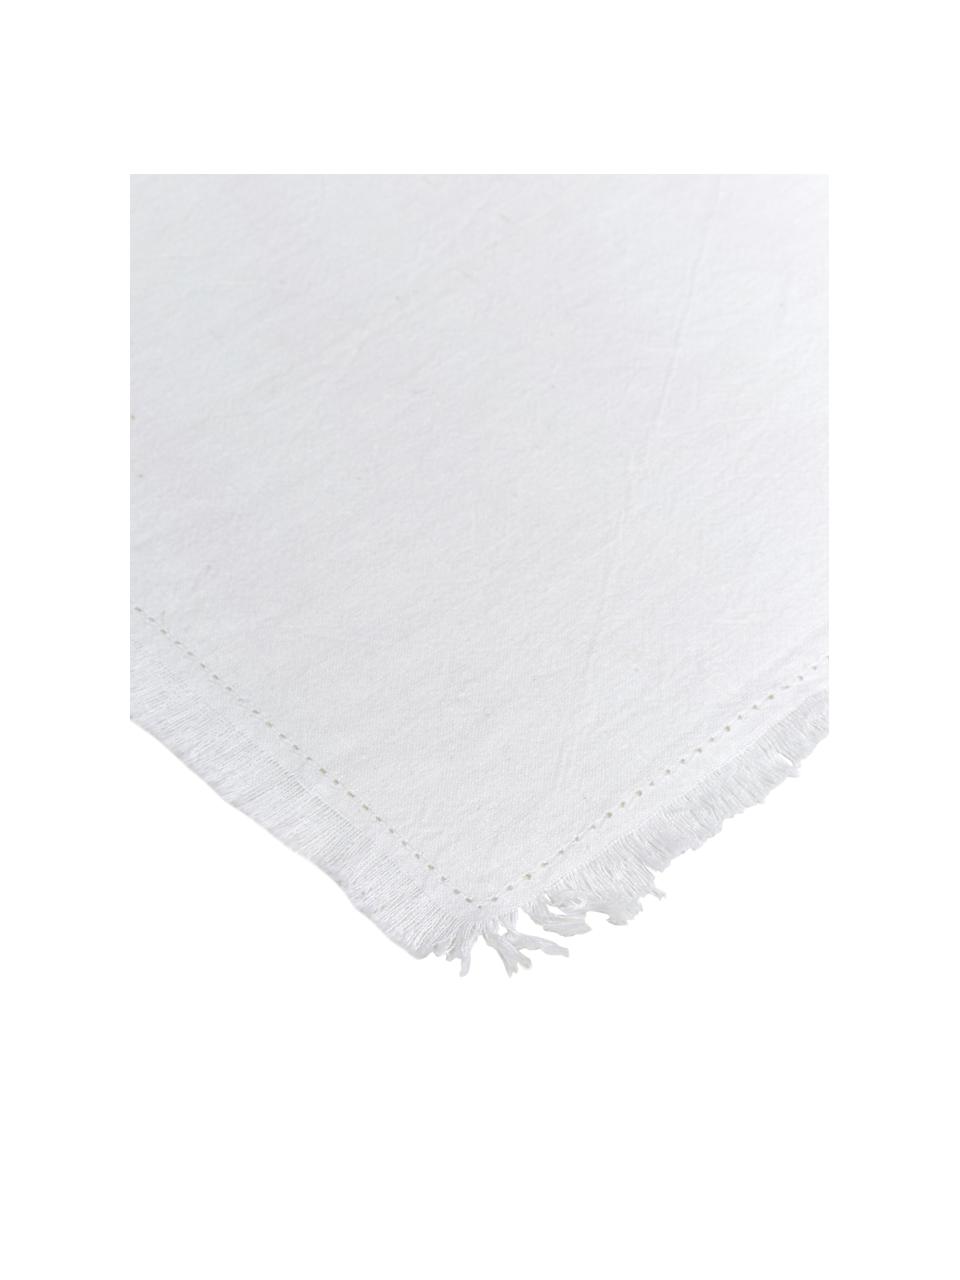 Baumwoll-Servietten Hilma mit Fransen, 2 Stück, 100% Baumwolle, Weiß, 45 x 45 cm